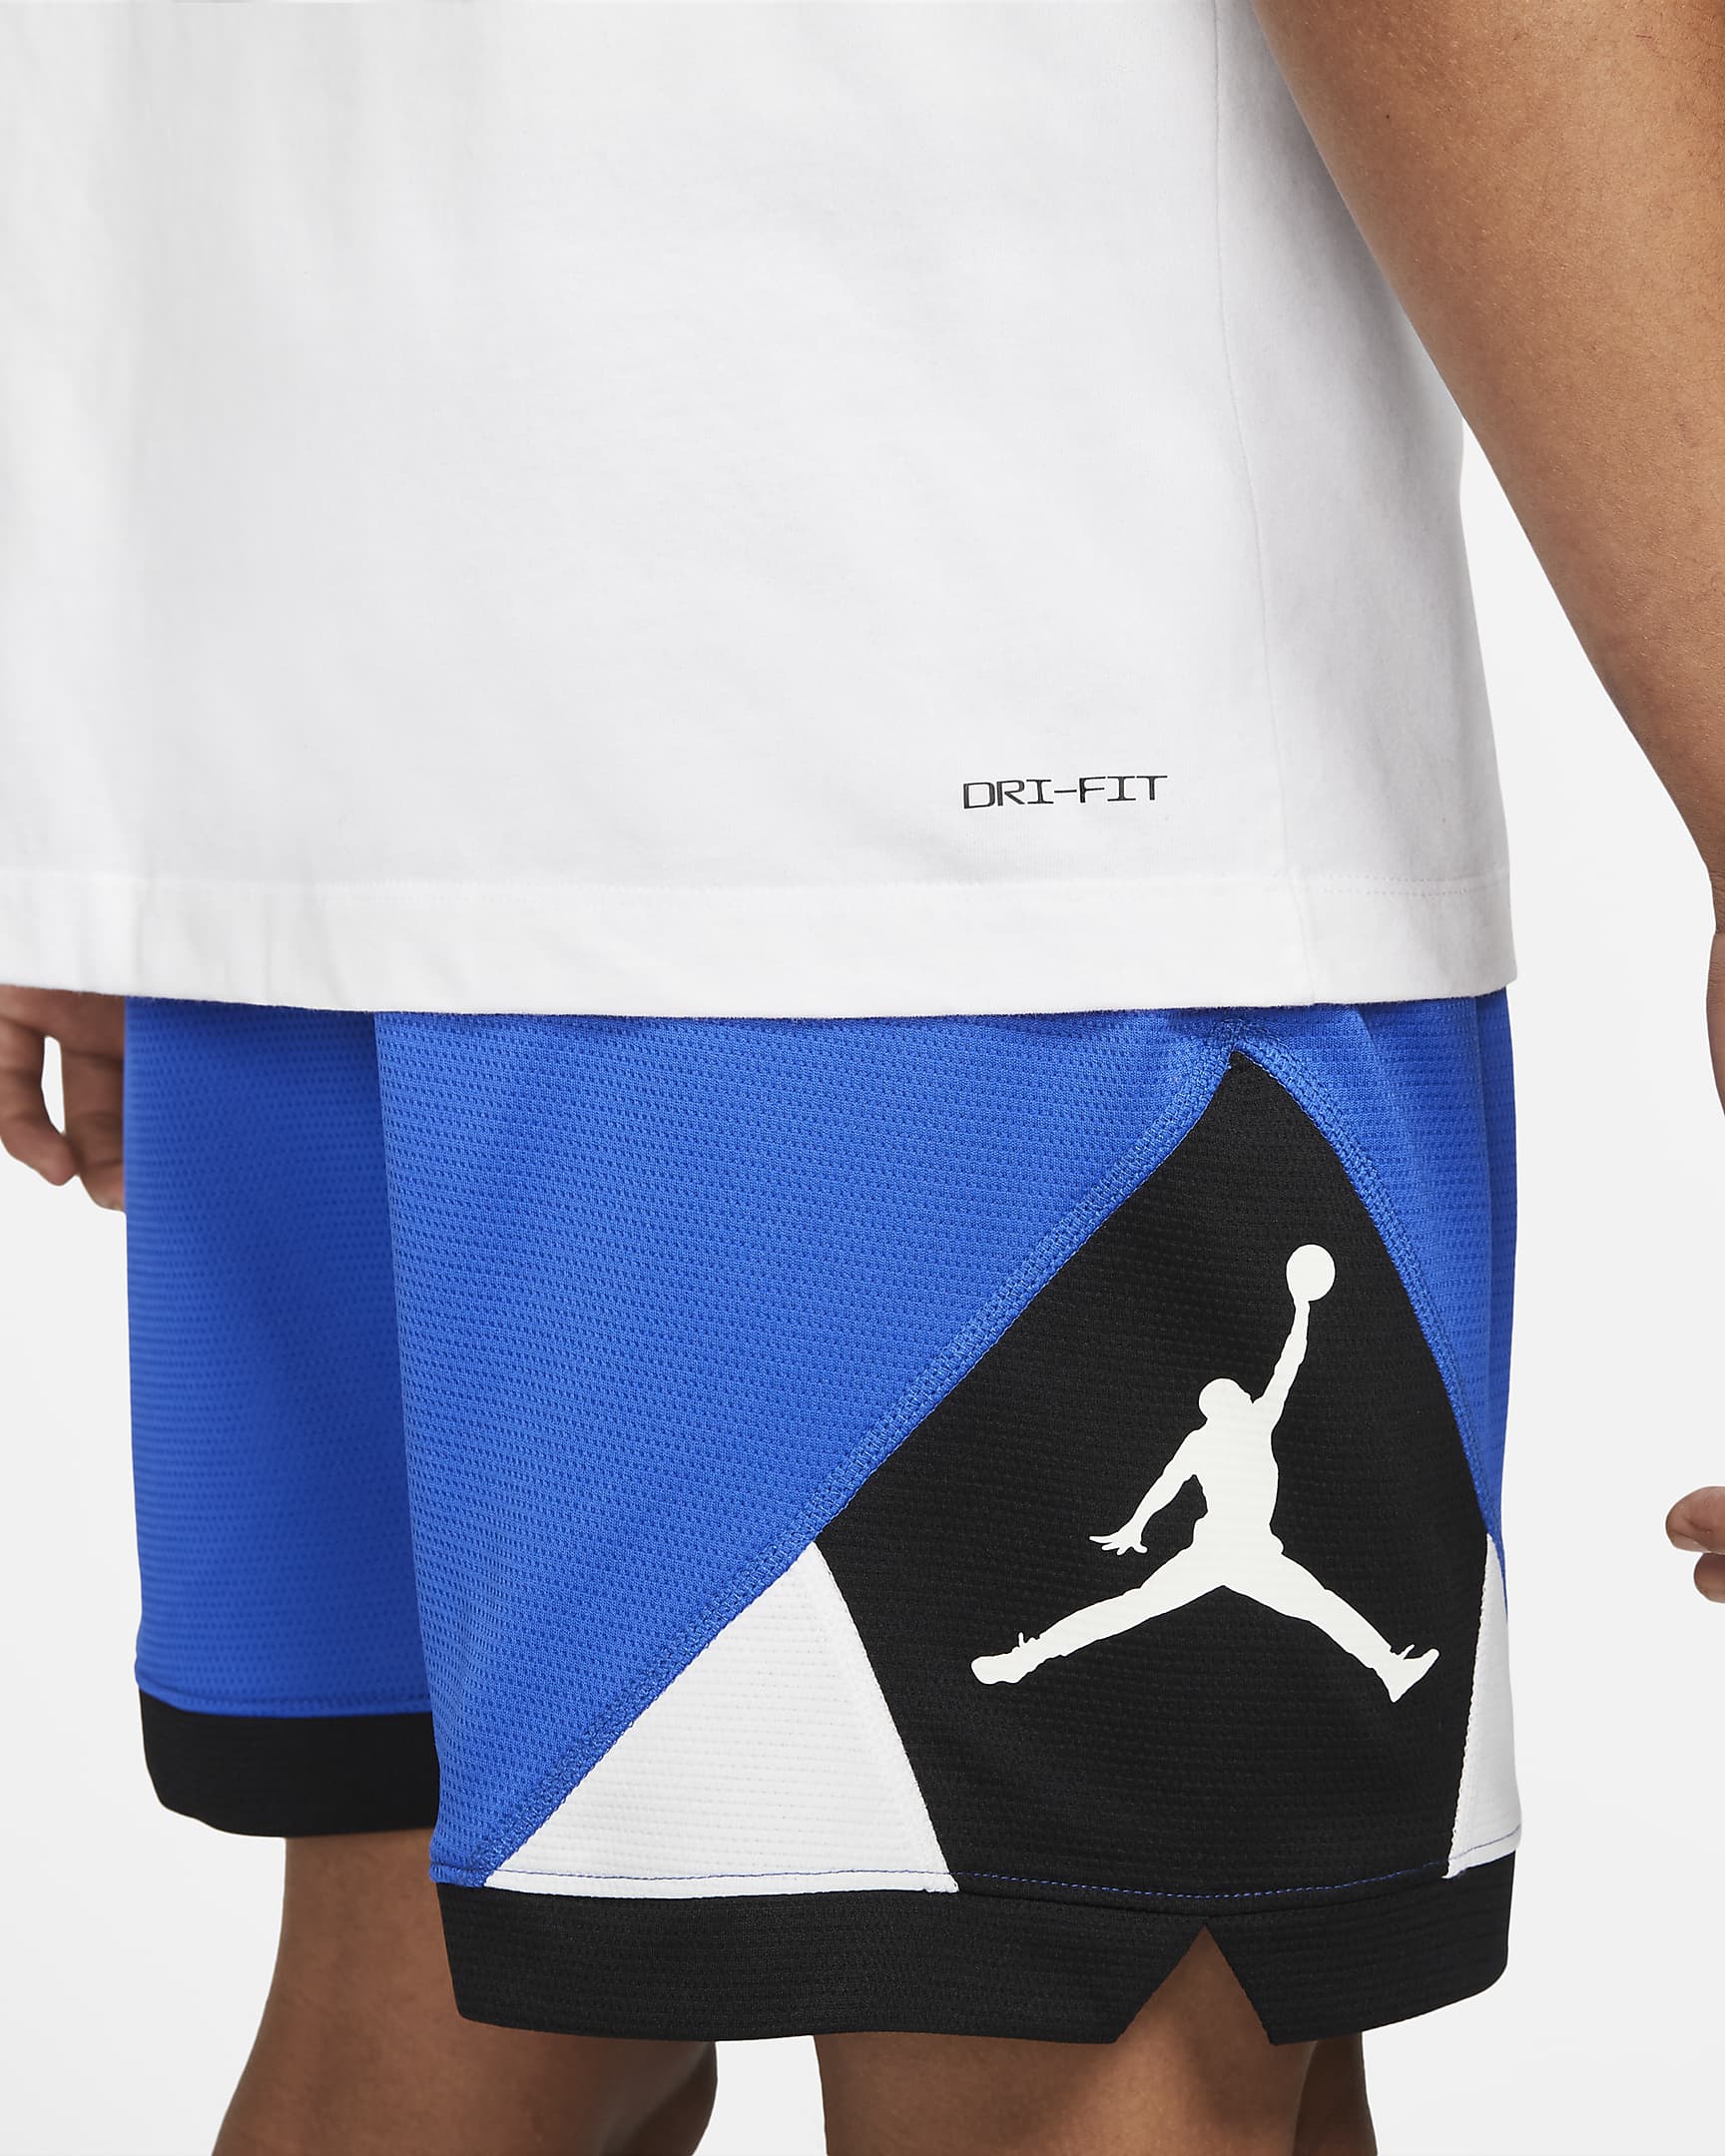 Jordan Jumpman Men's T-Shirt. Nike CH